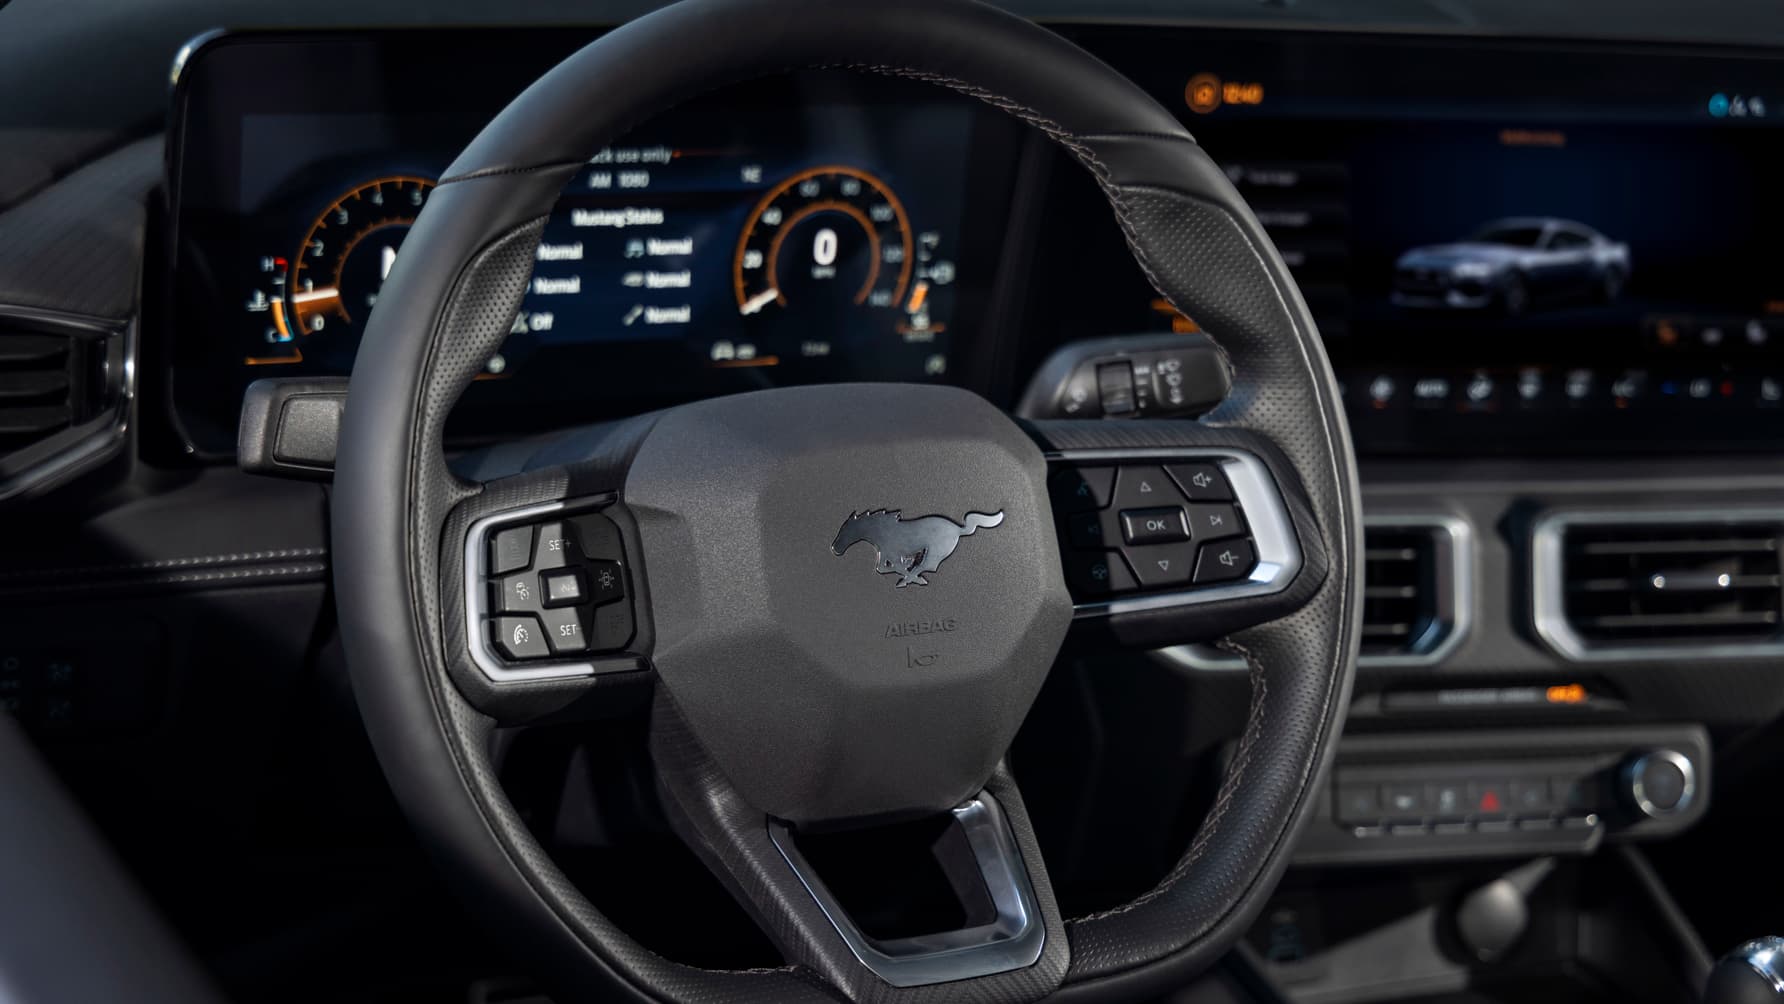 Officiel : venez découvrir la nouvelle Ford Mustang | TopGear